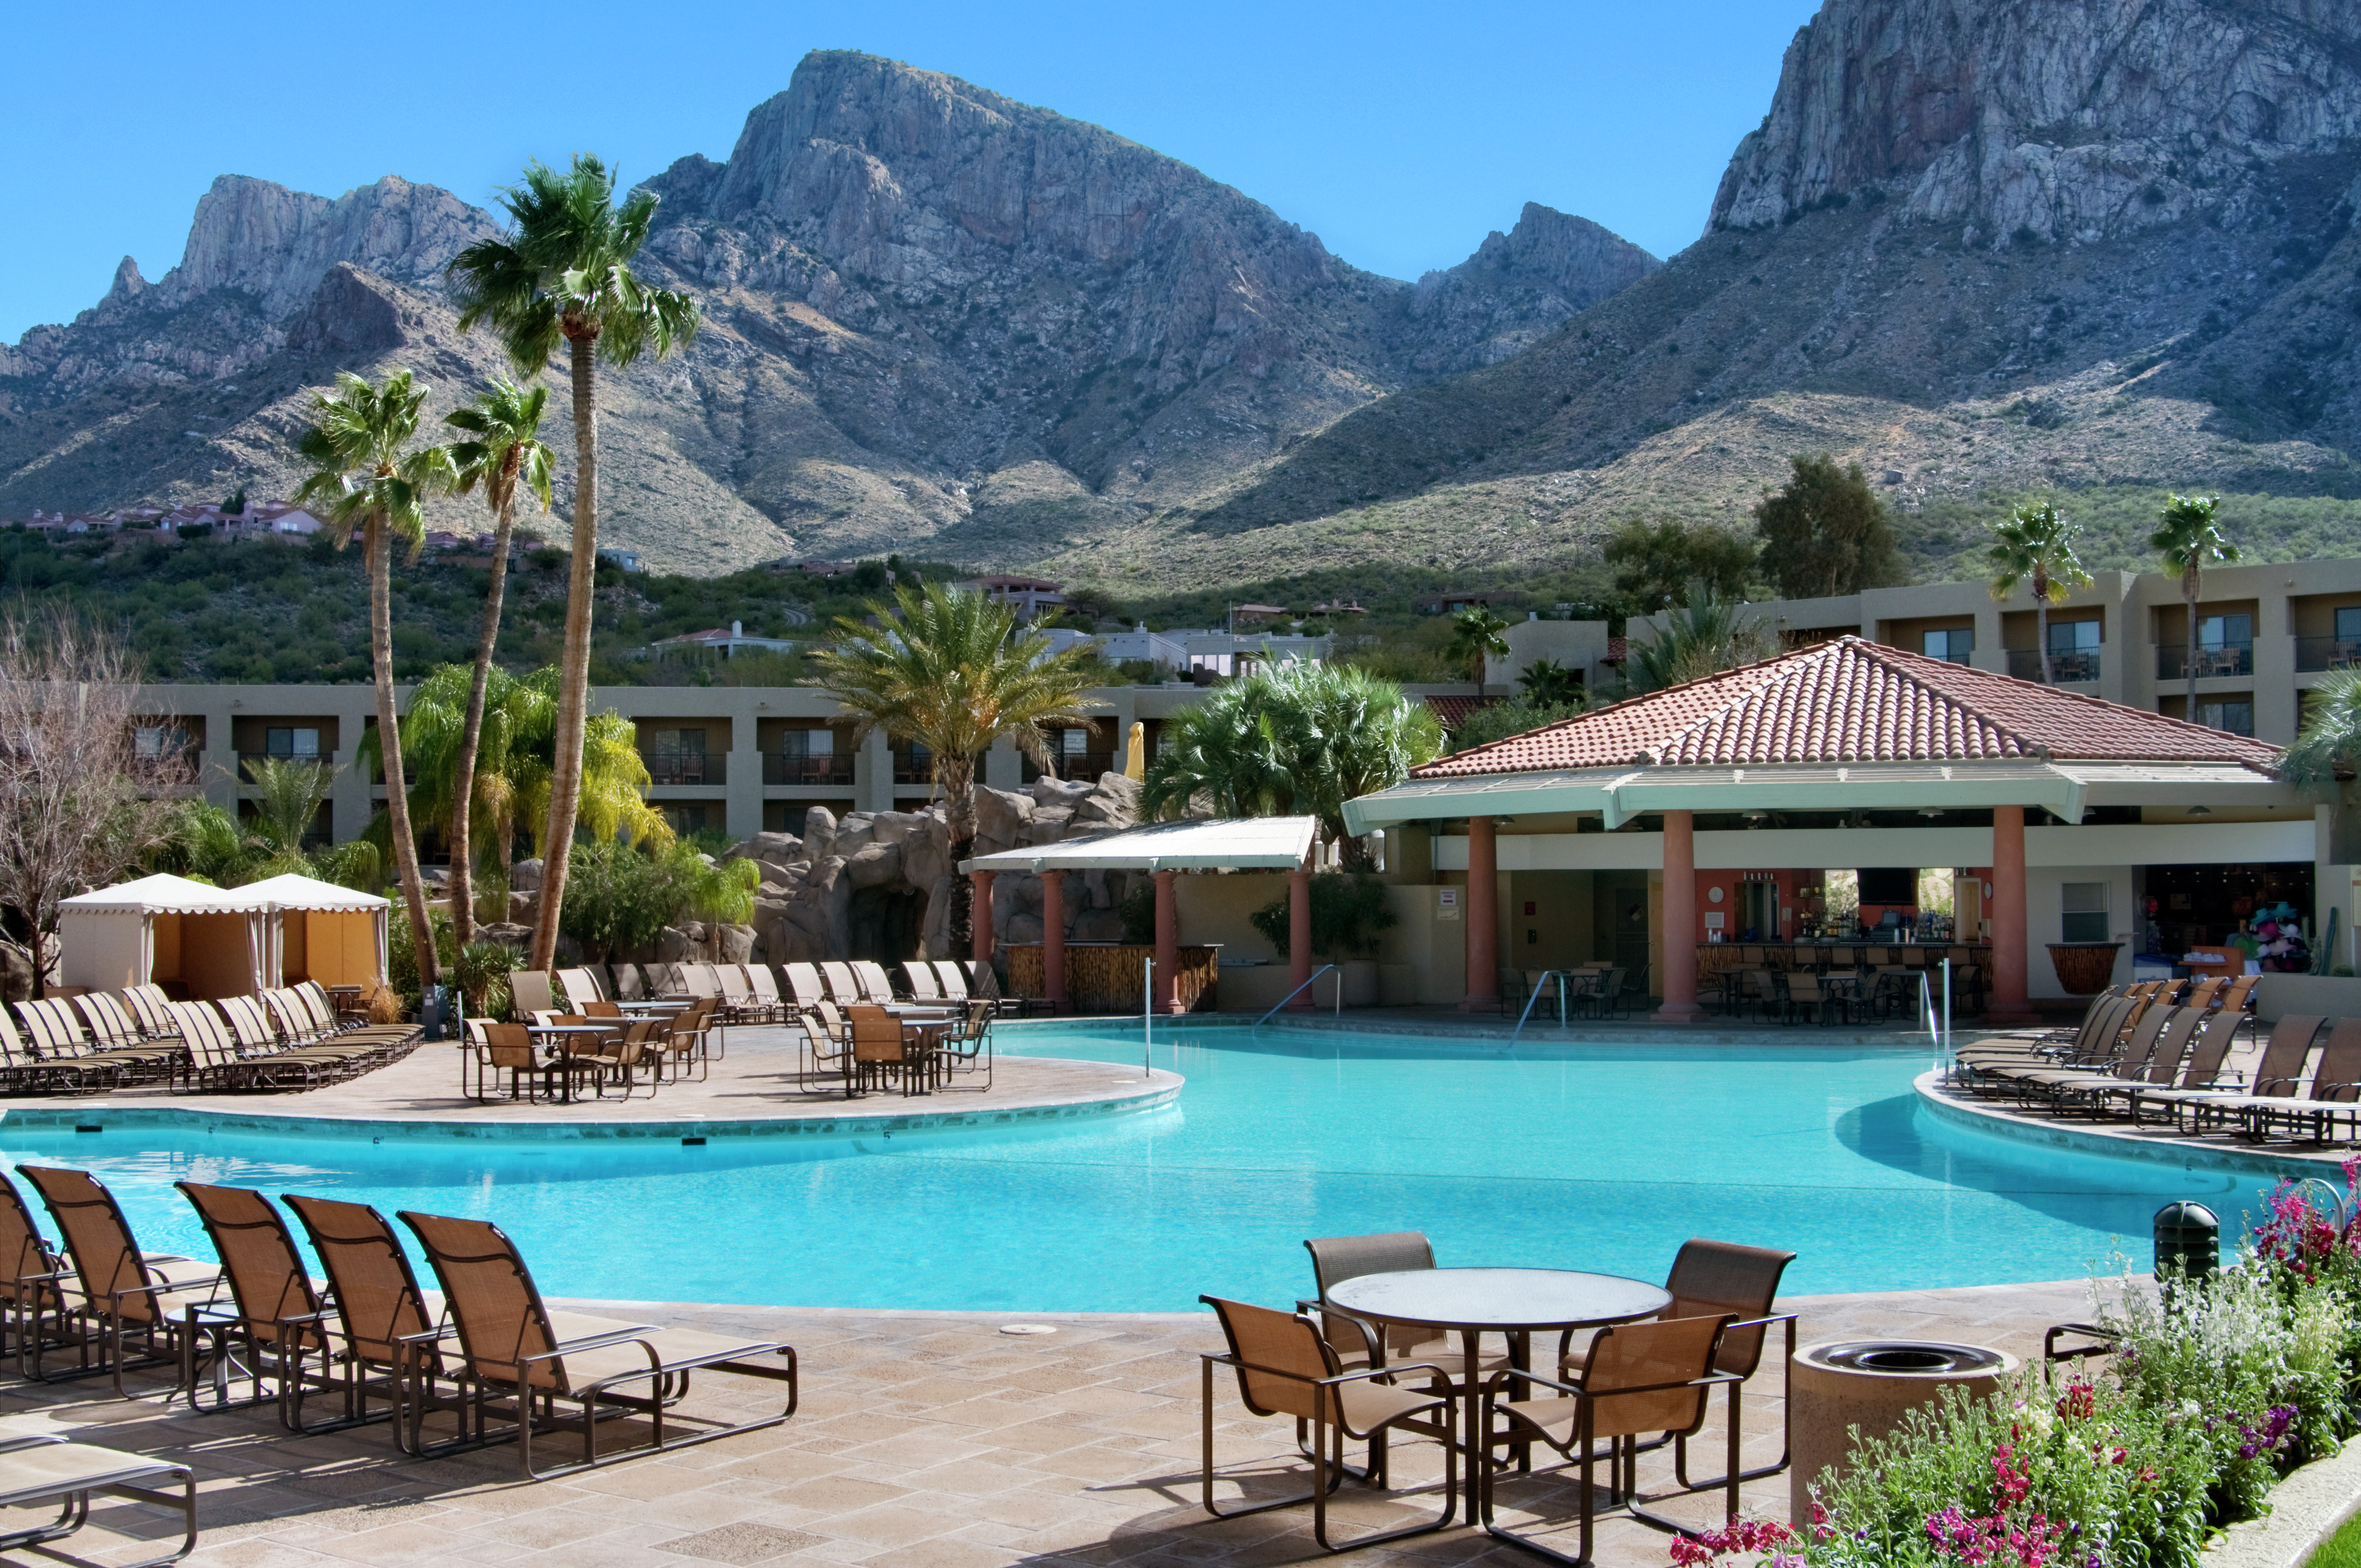 Desert Springs Oasis Outdoor Pool Area